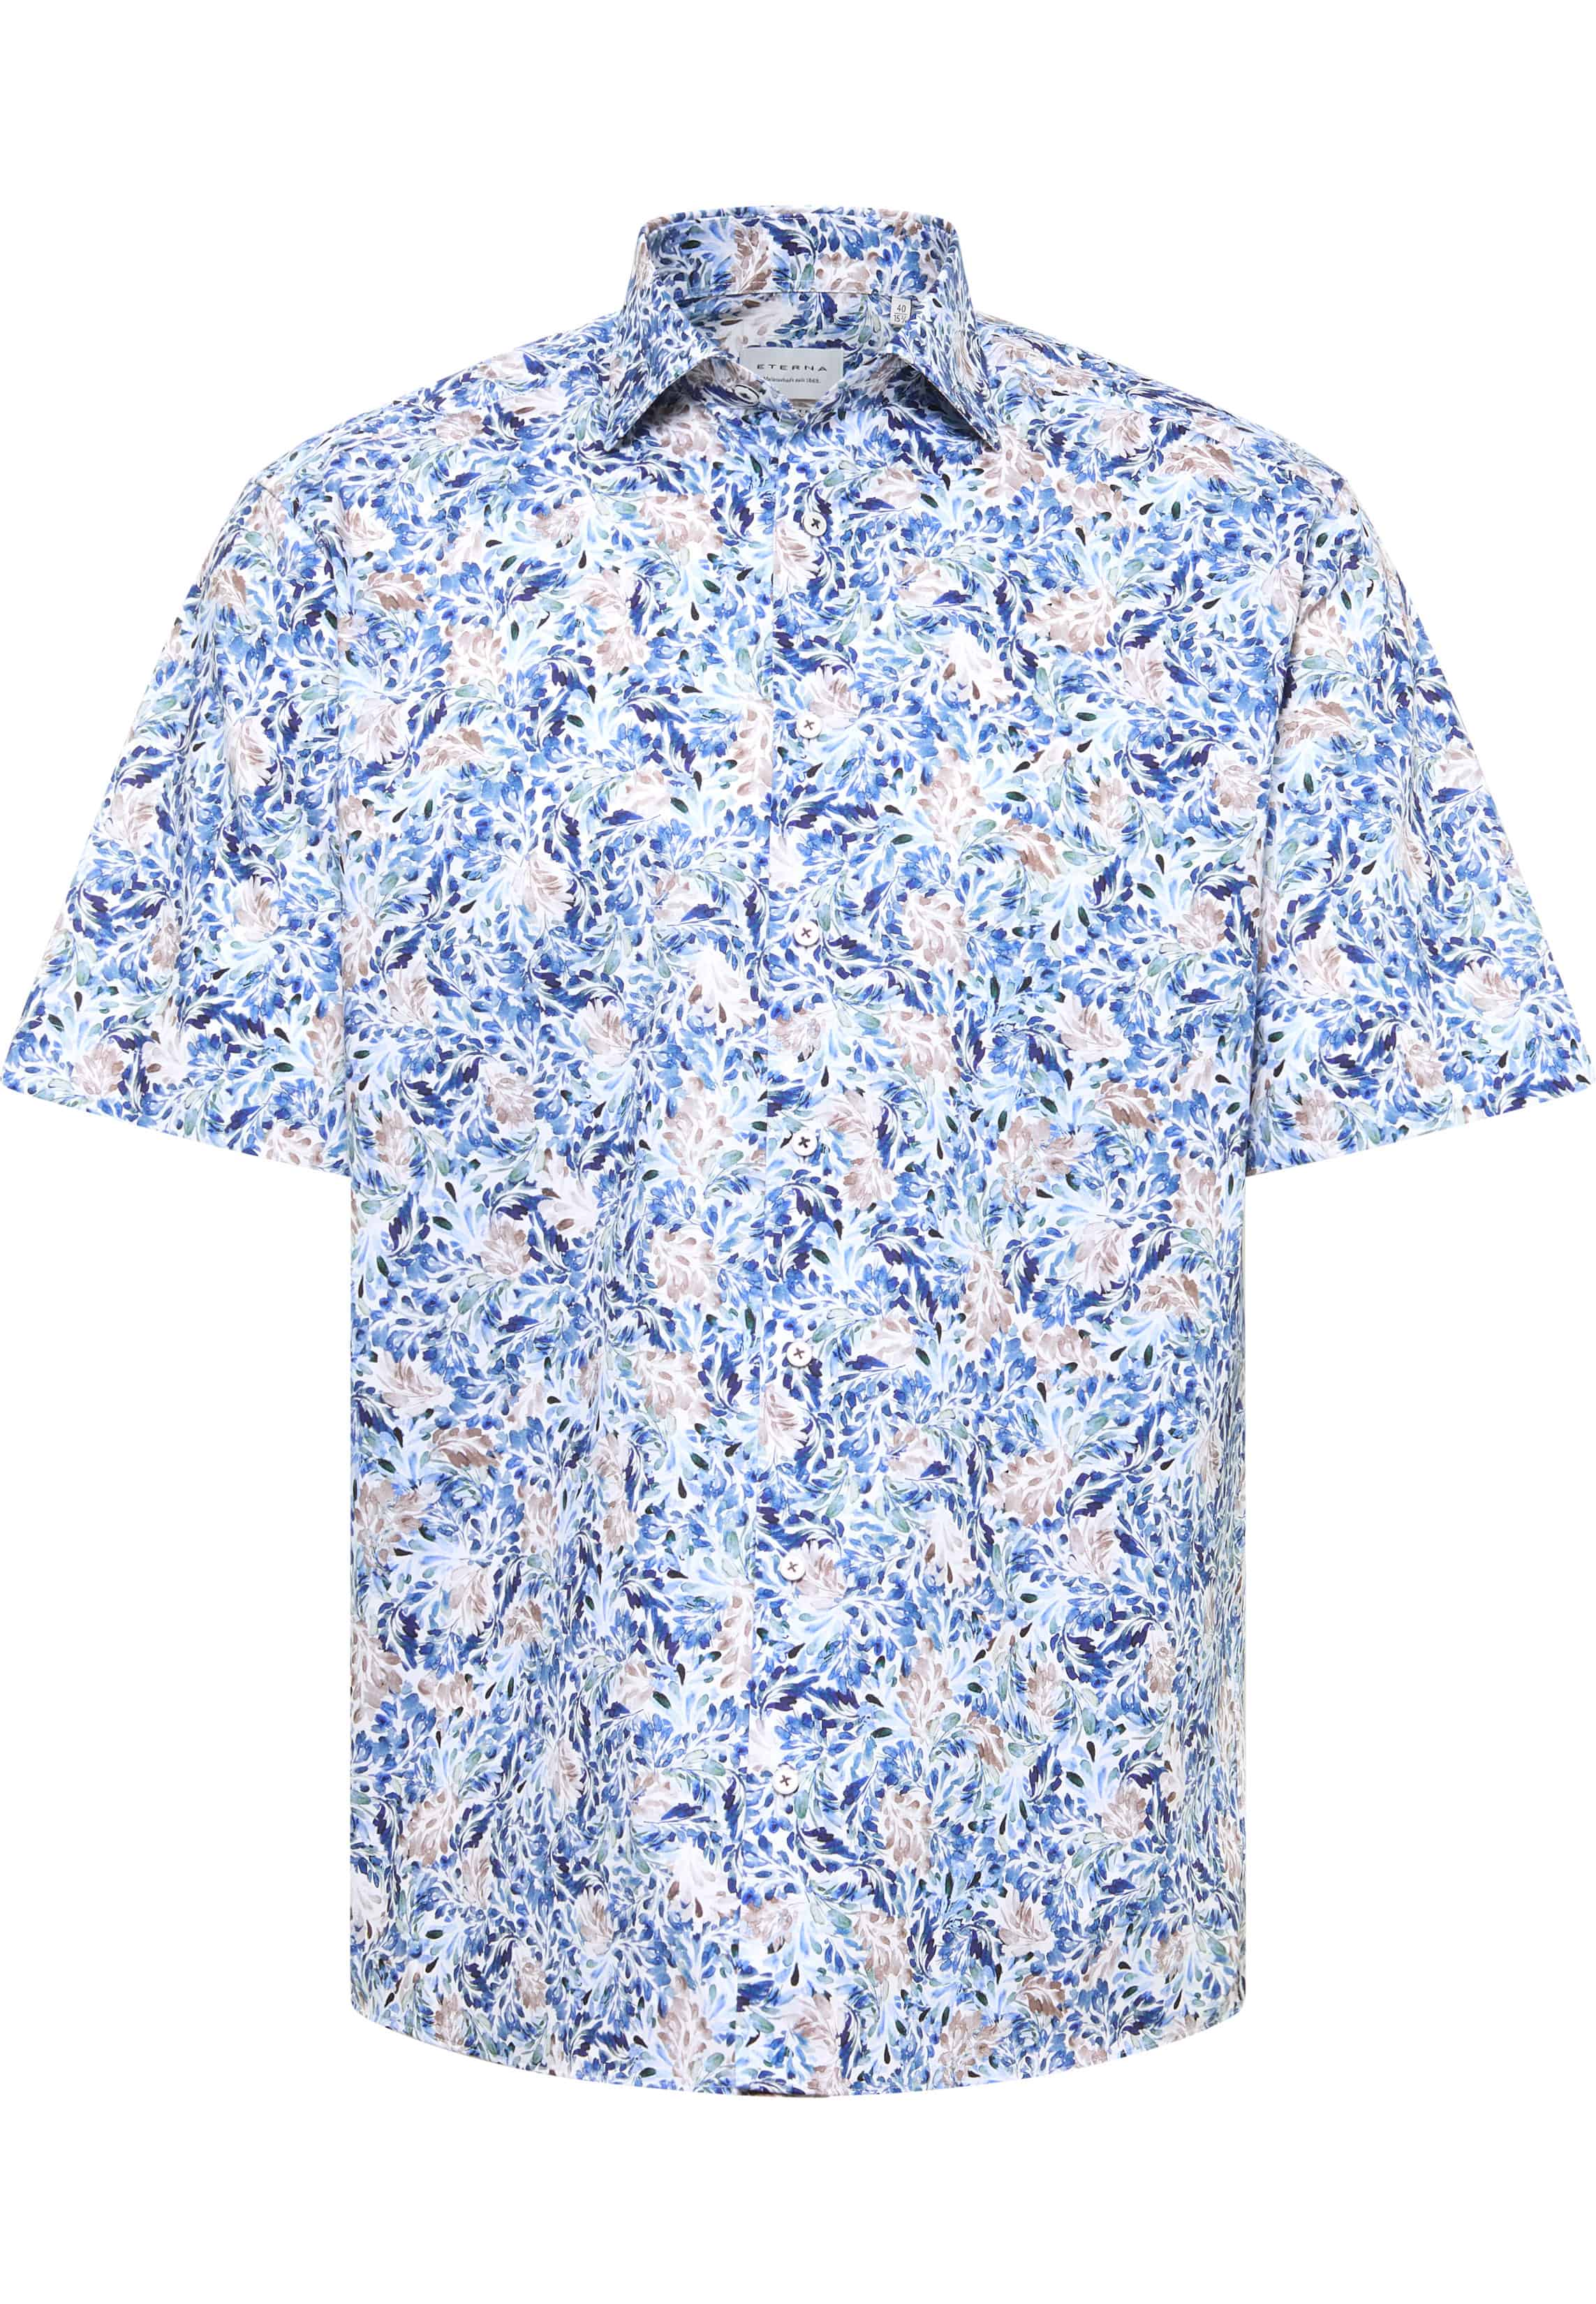 COMFORT FIT Overhemd in middenblauw gedrukt